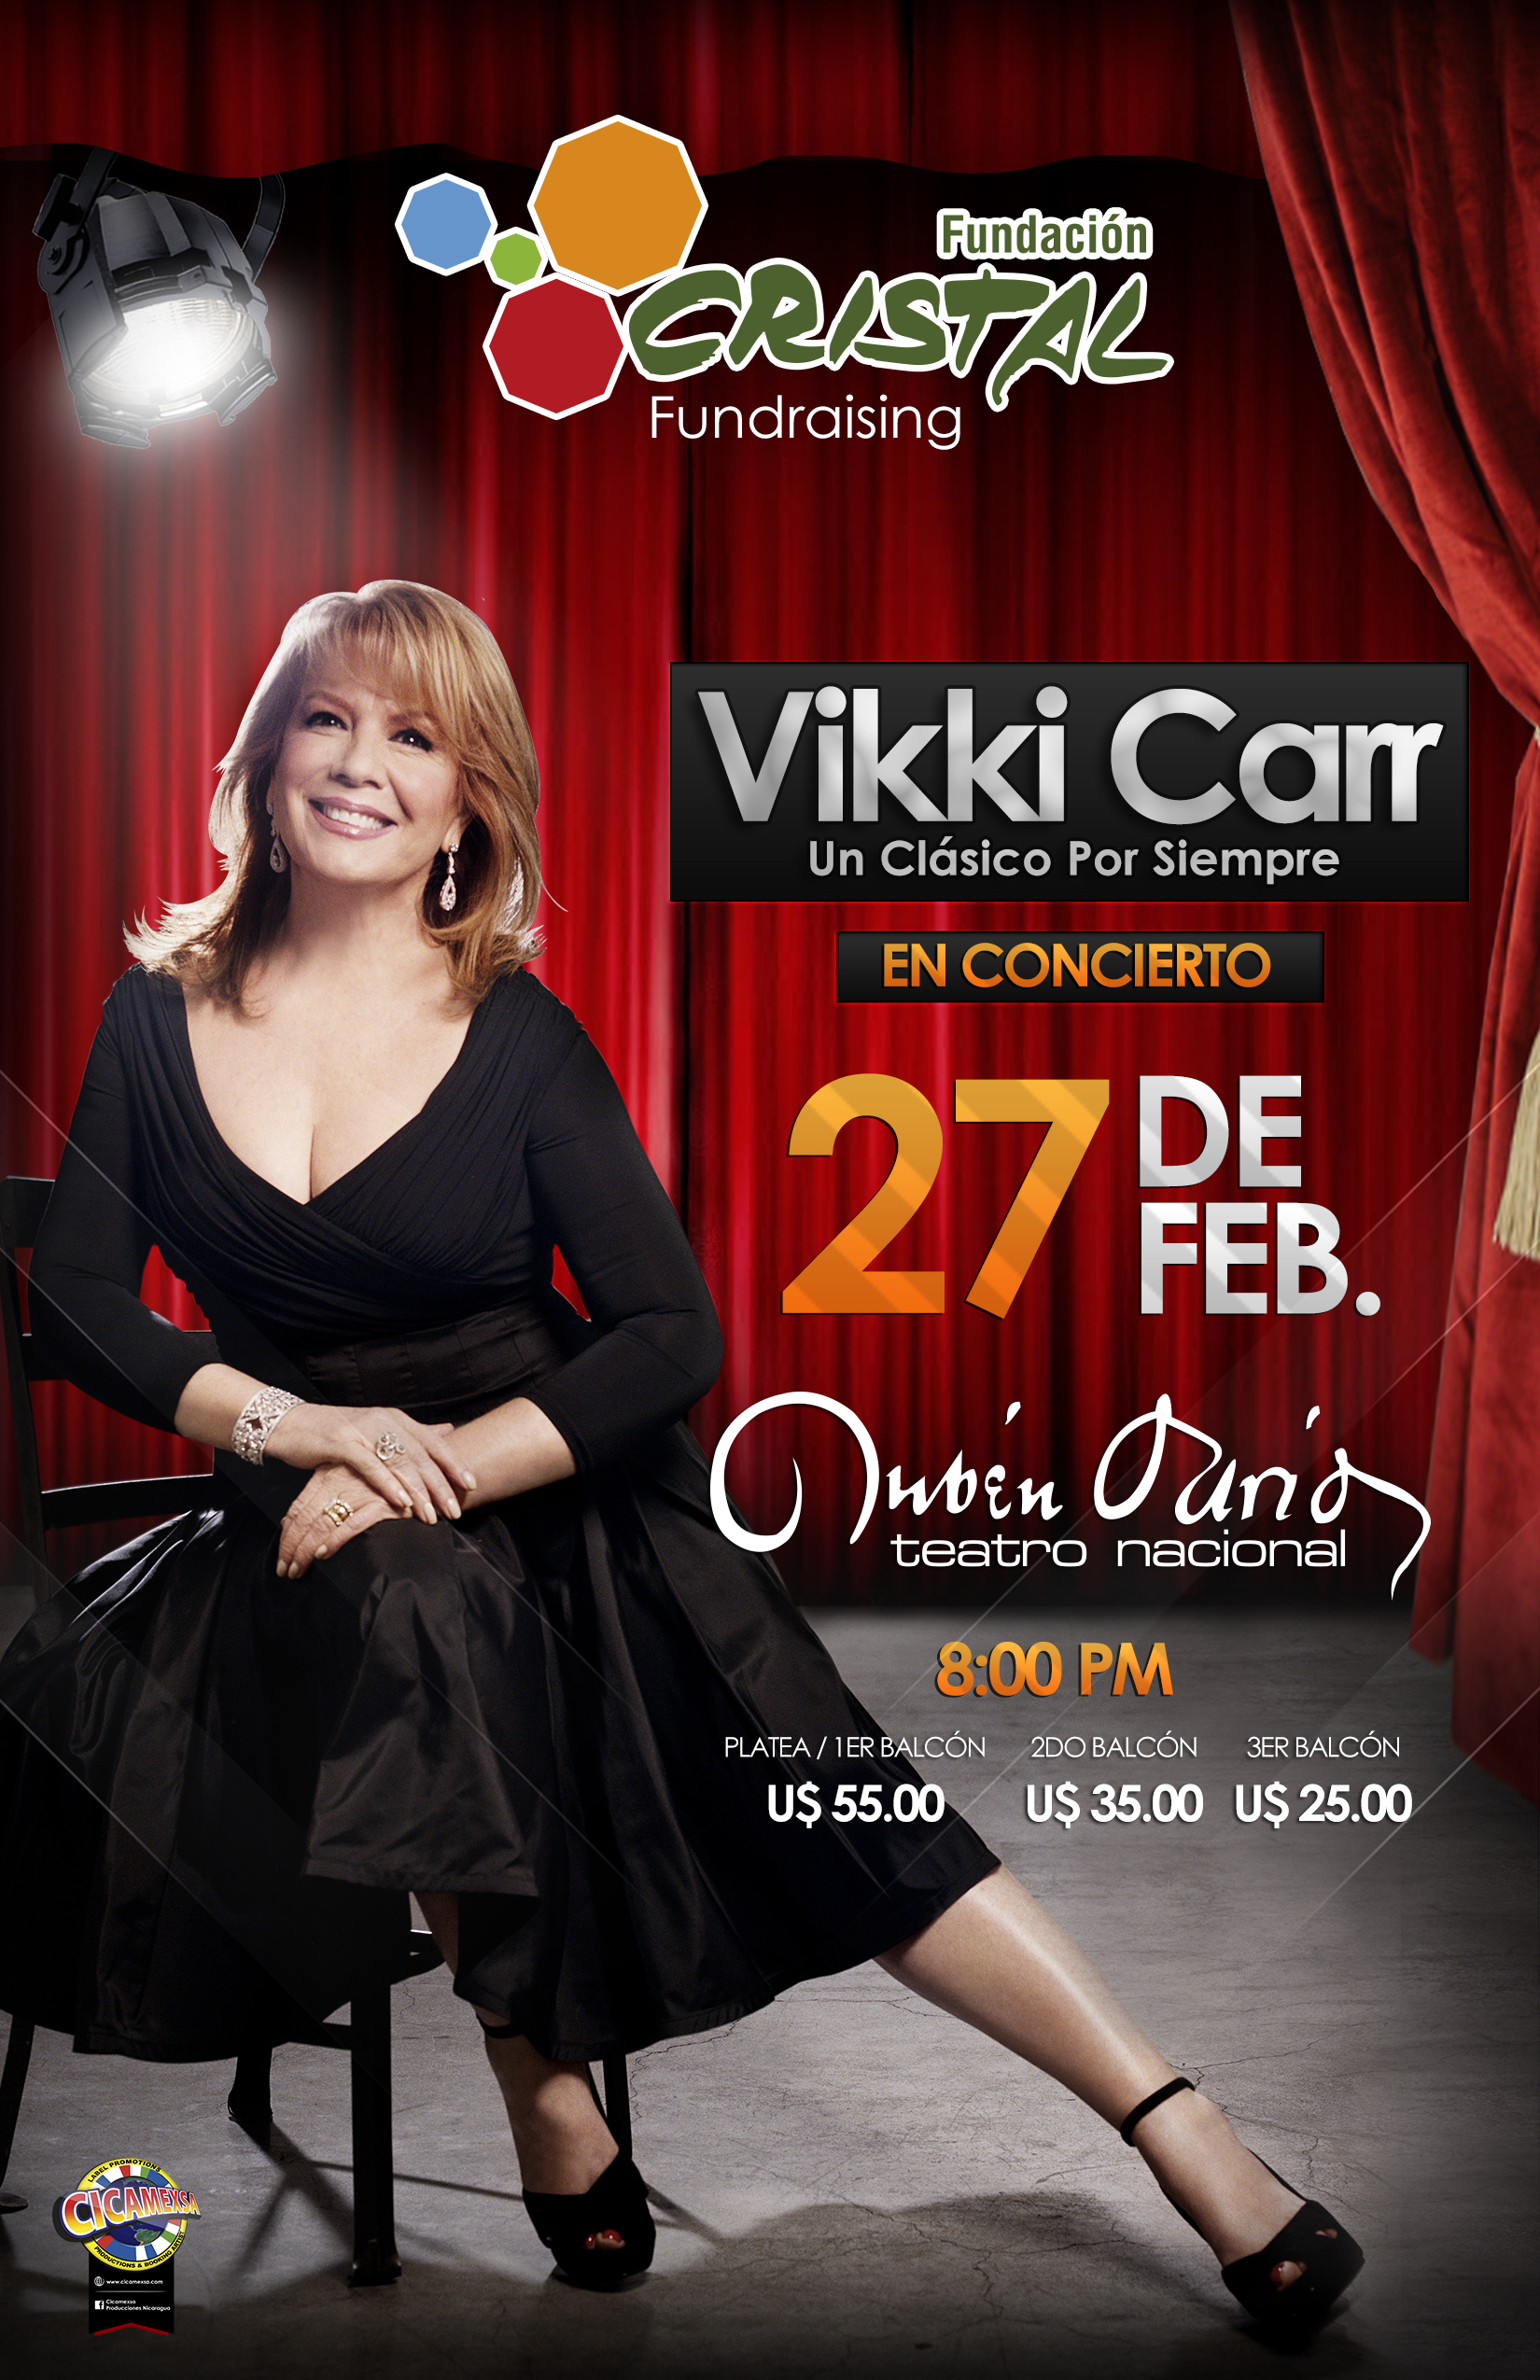 Vikki Carr at Teatro Nacional Rubén Darío